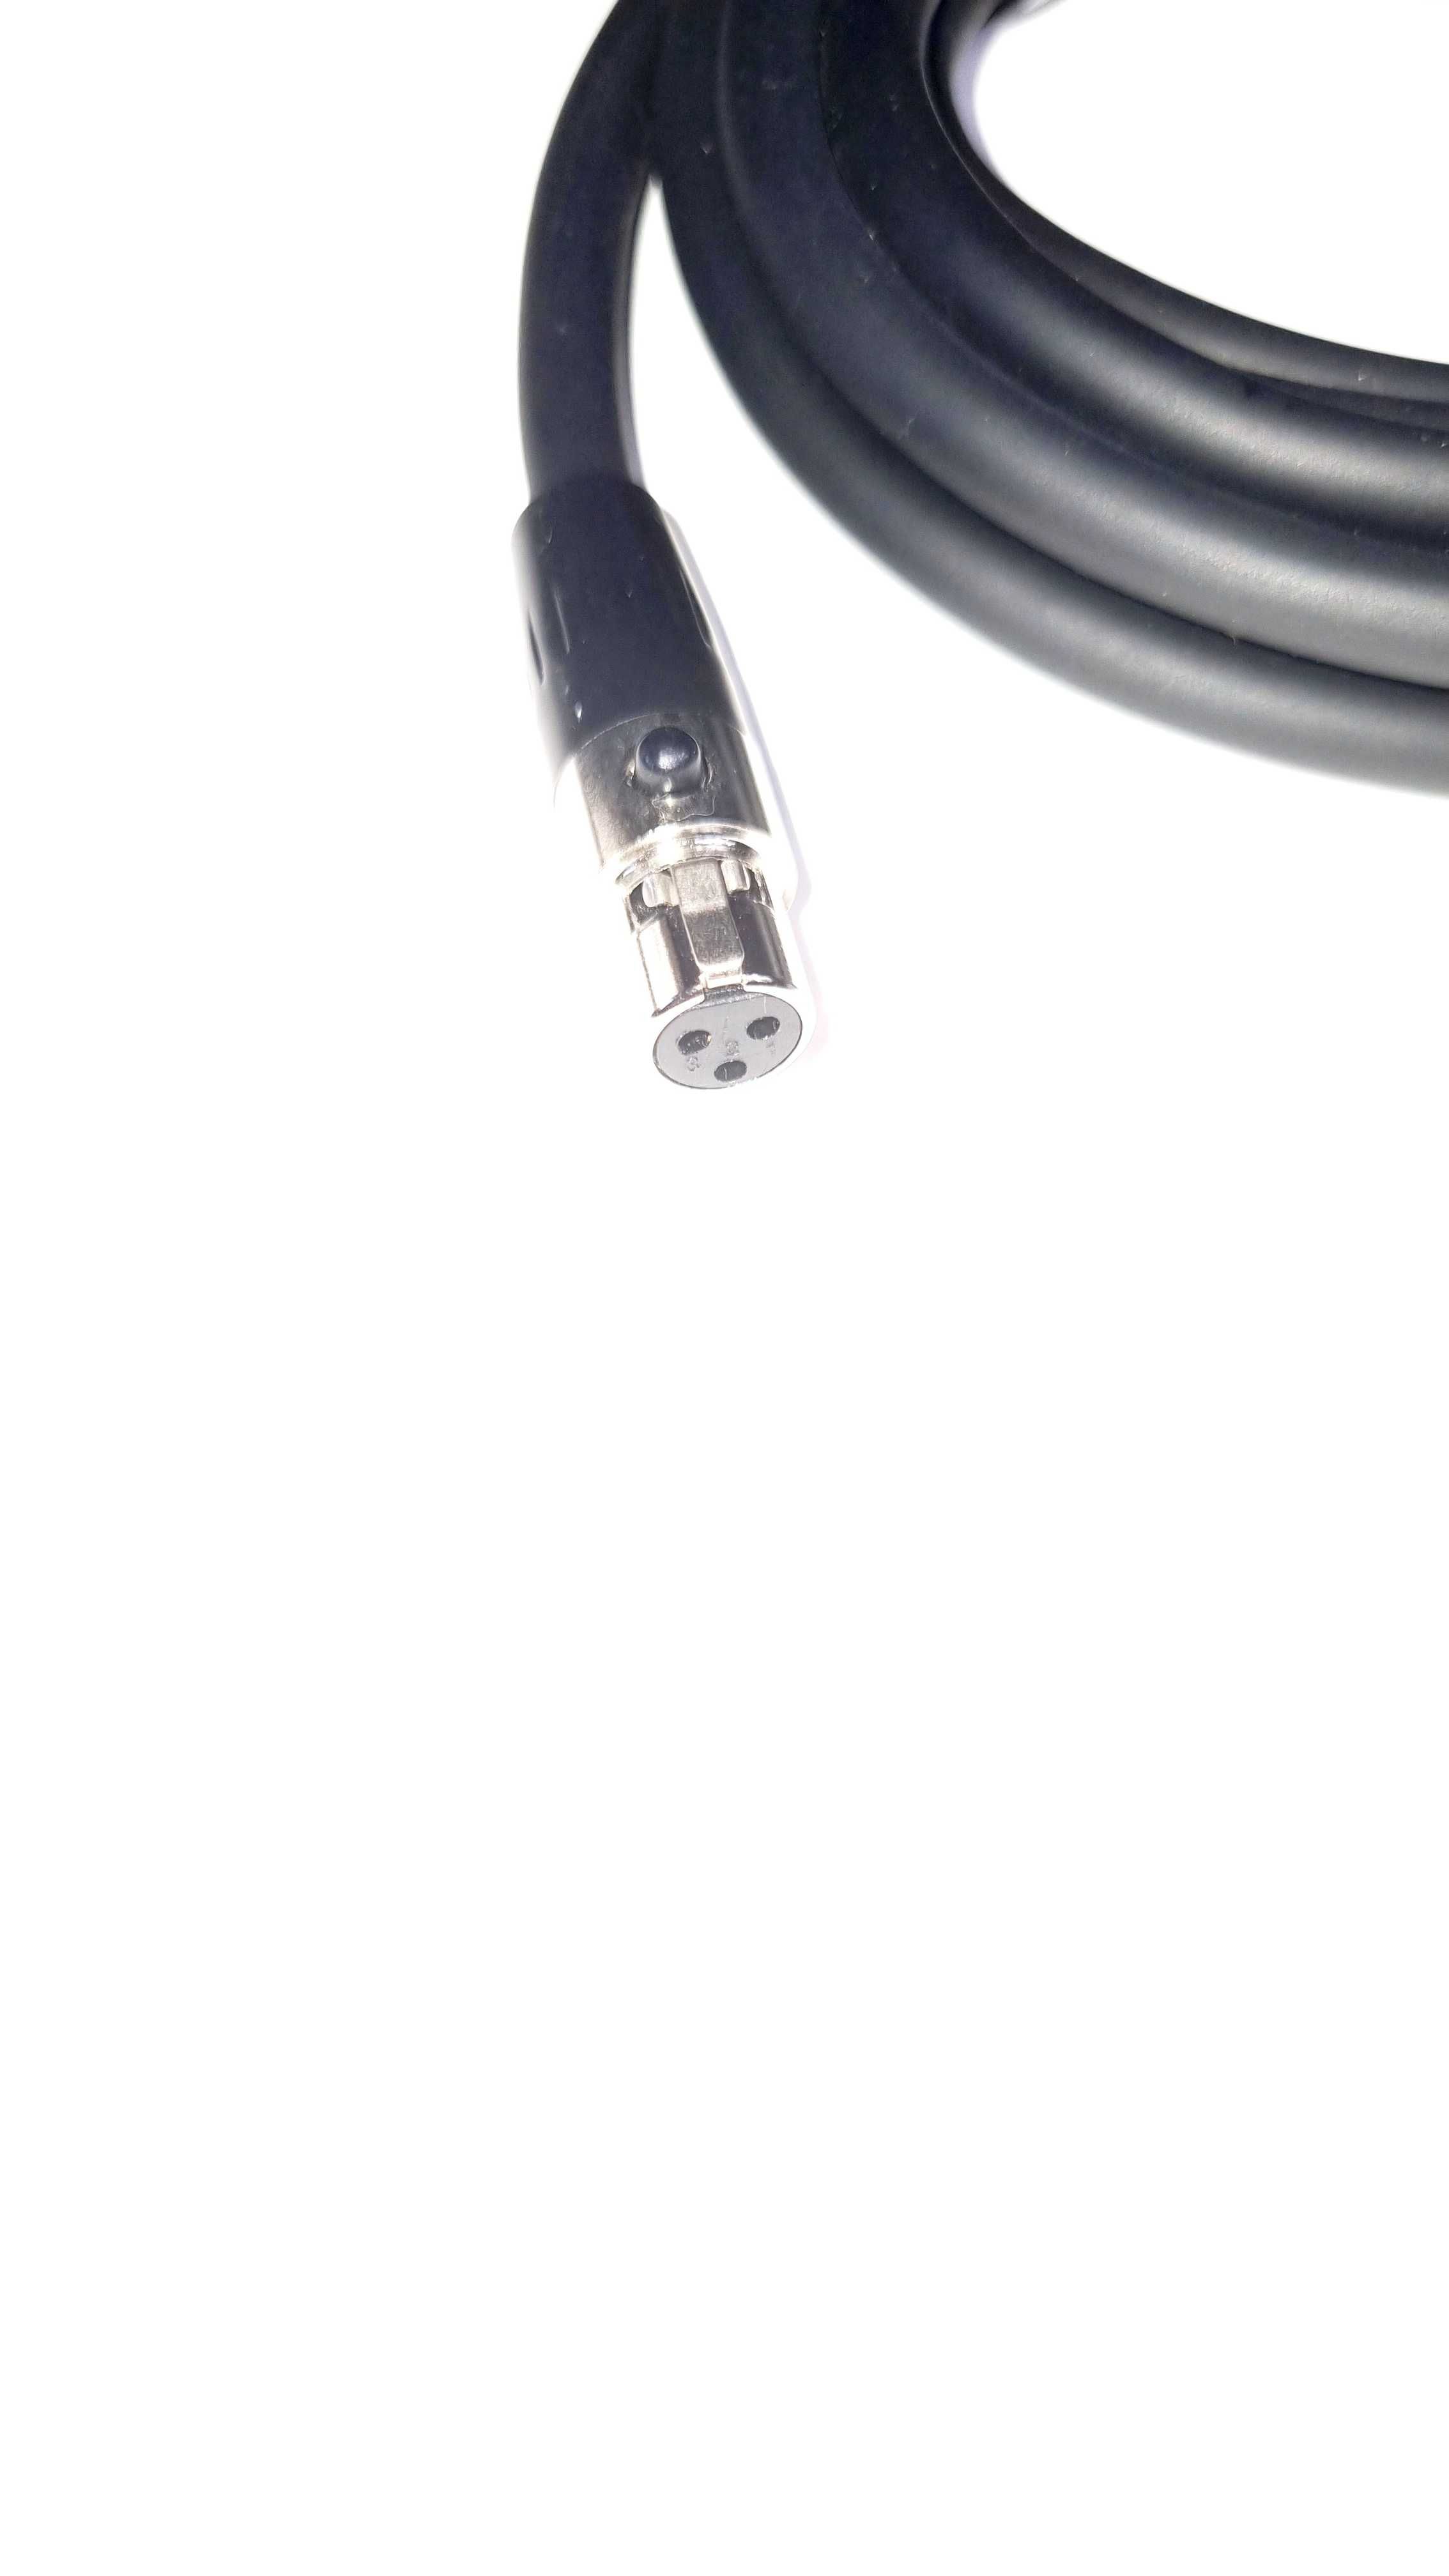 Mikrofon bezprzewodowy Saramonic SR-WM4C krawatówka + kabel